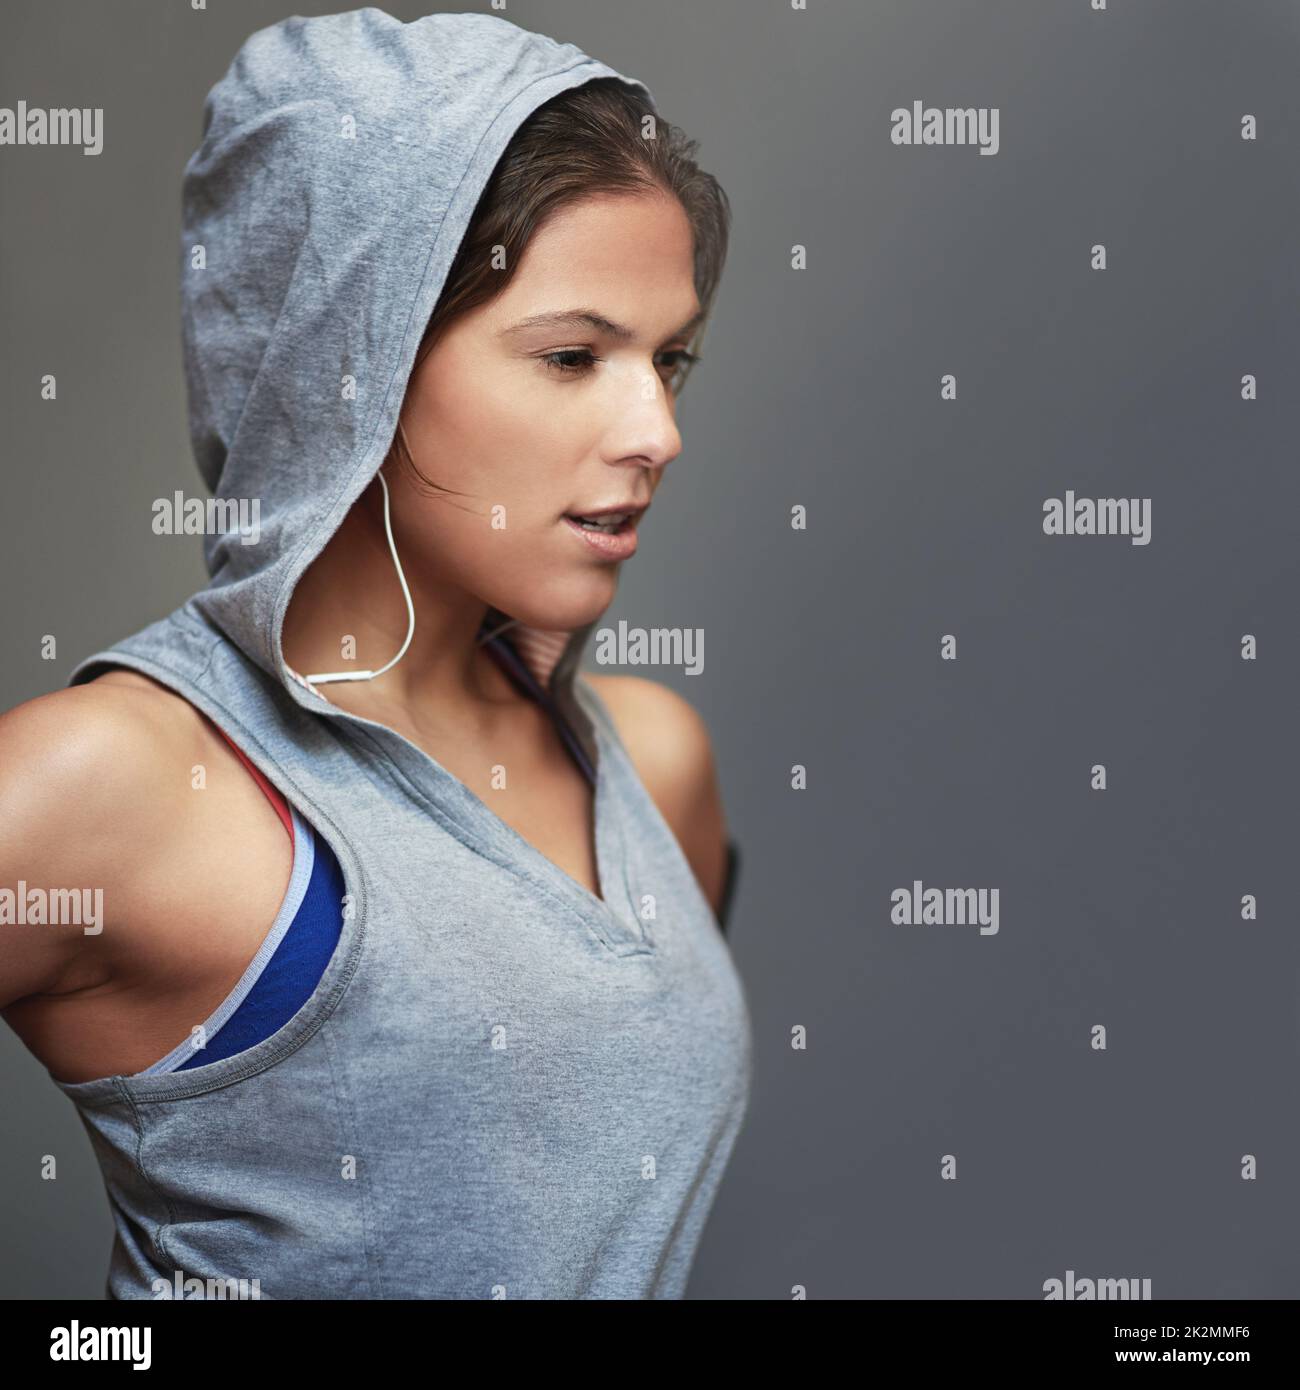 Si impegna per il fitness. Scatto di una giovane donna sportiva che indossa una felpa con cappuccio in posa su sfondo grigio. Foto Stock